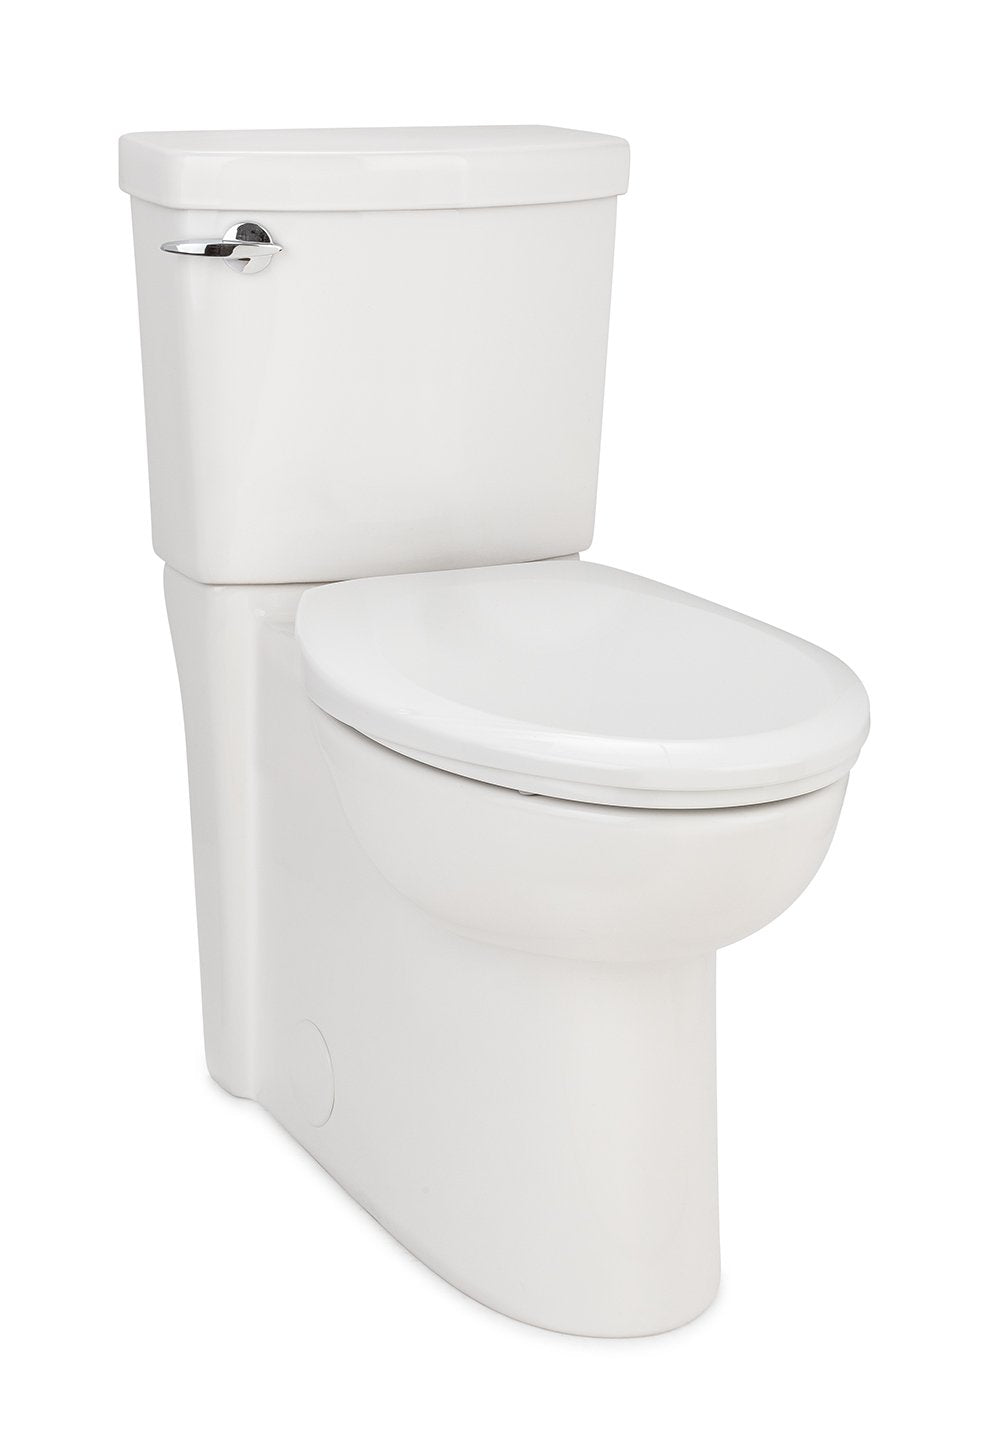 Premium Toilet Seat - Mounted